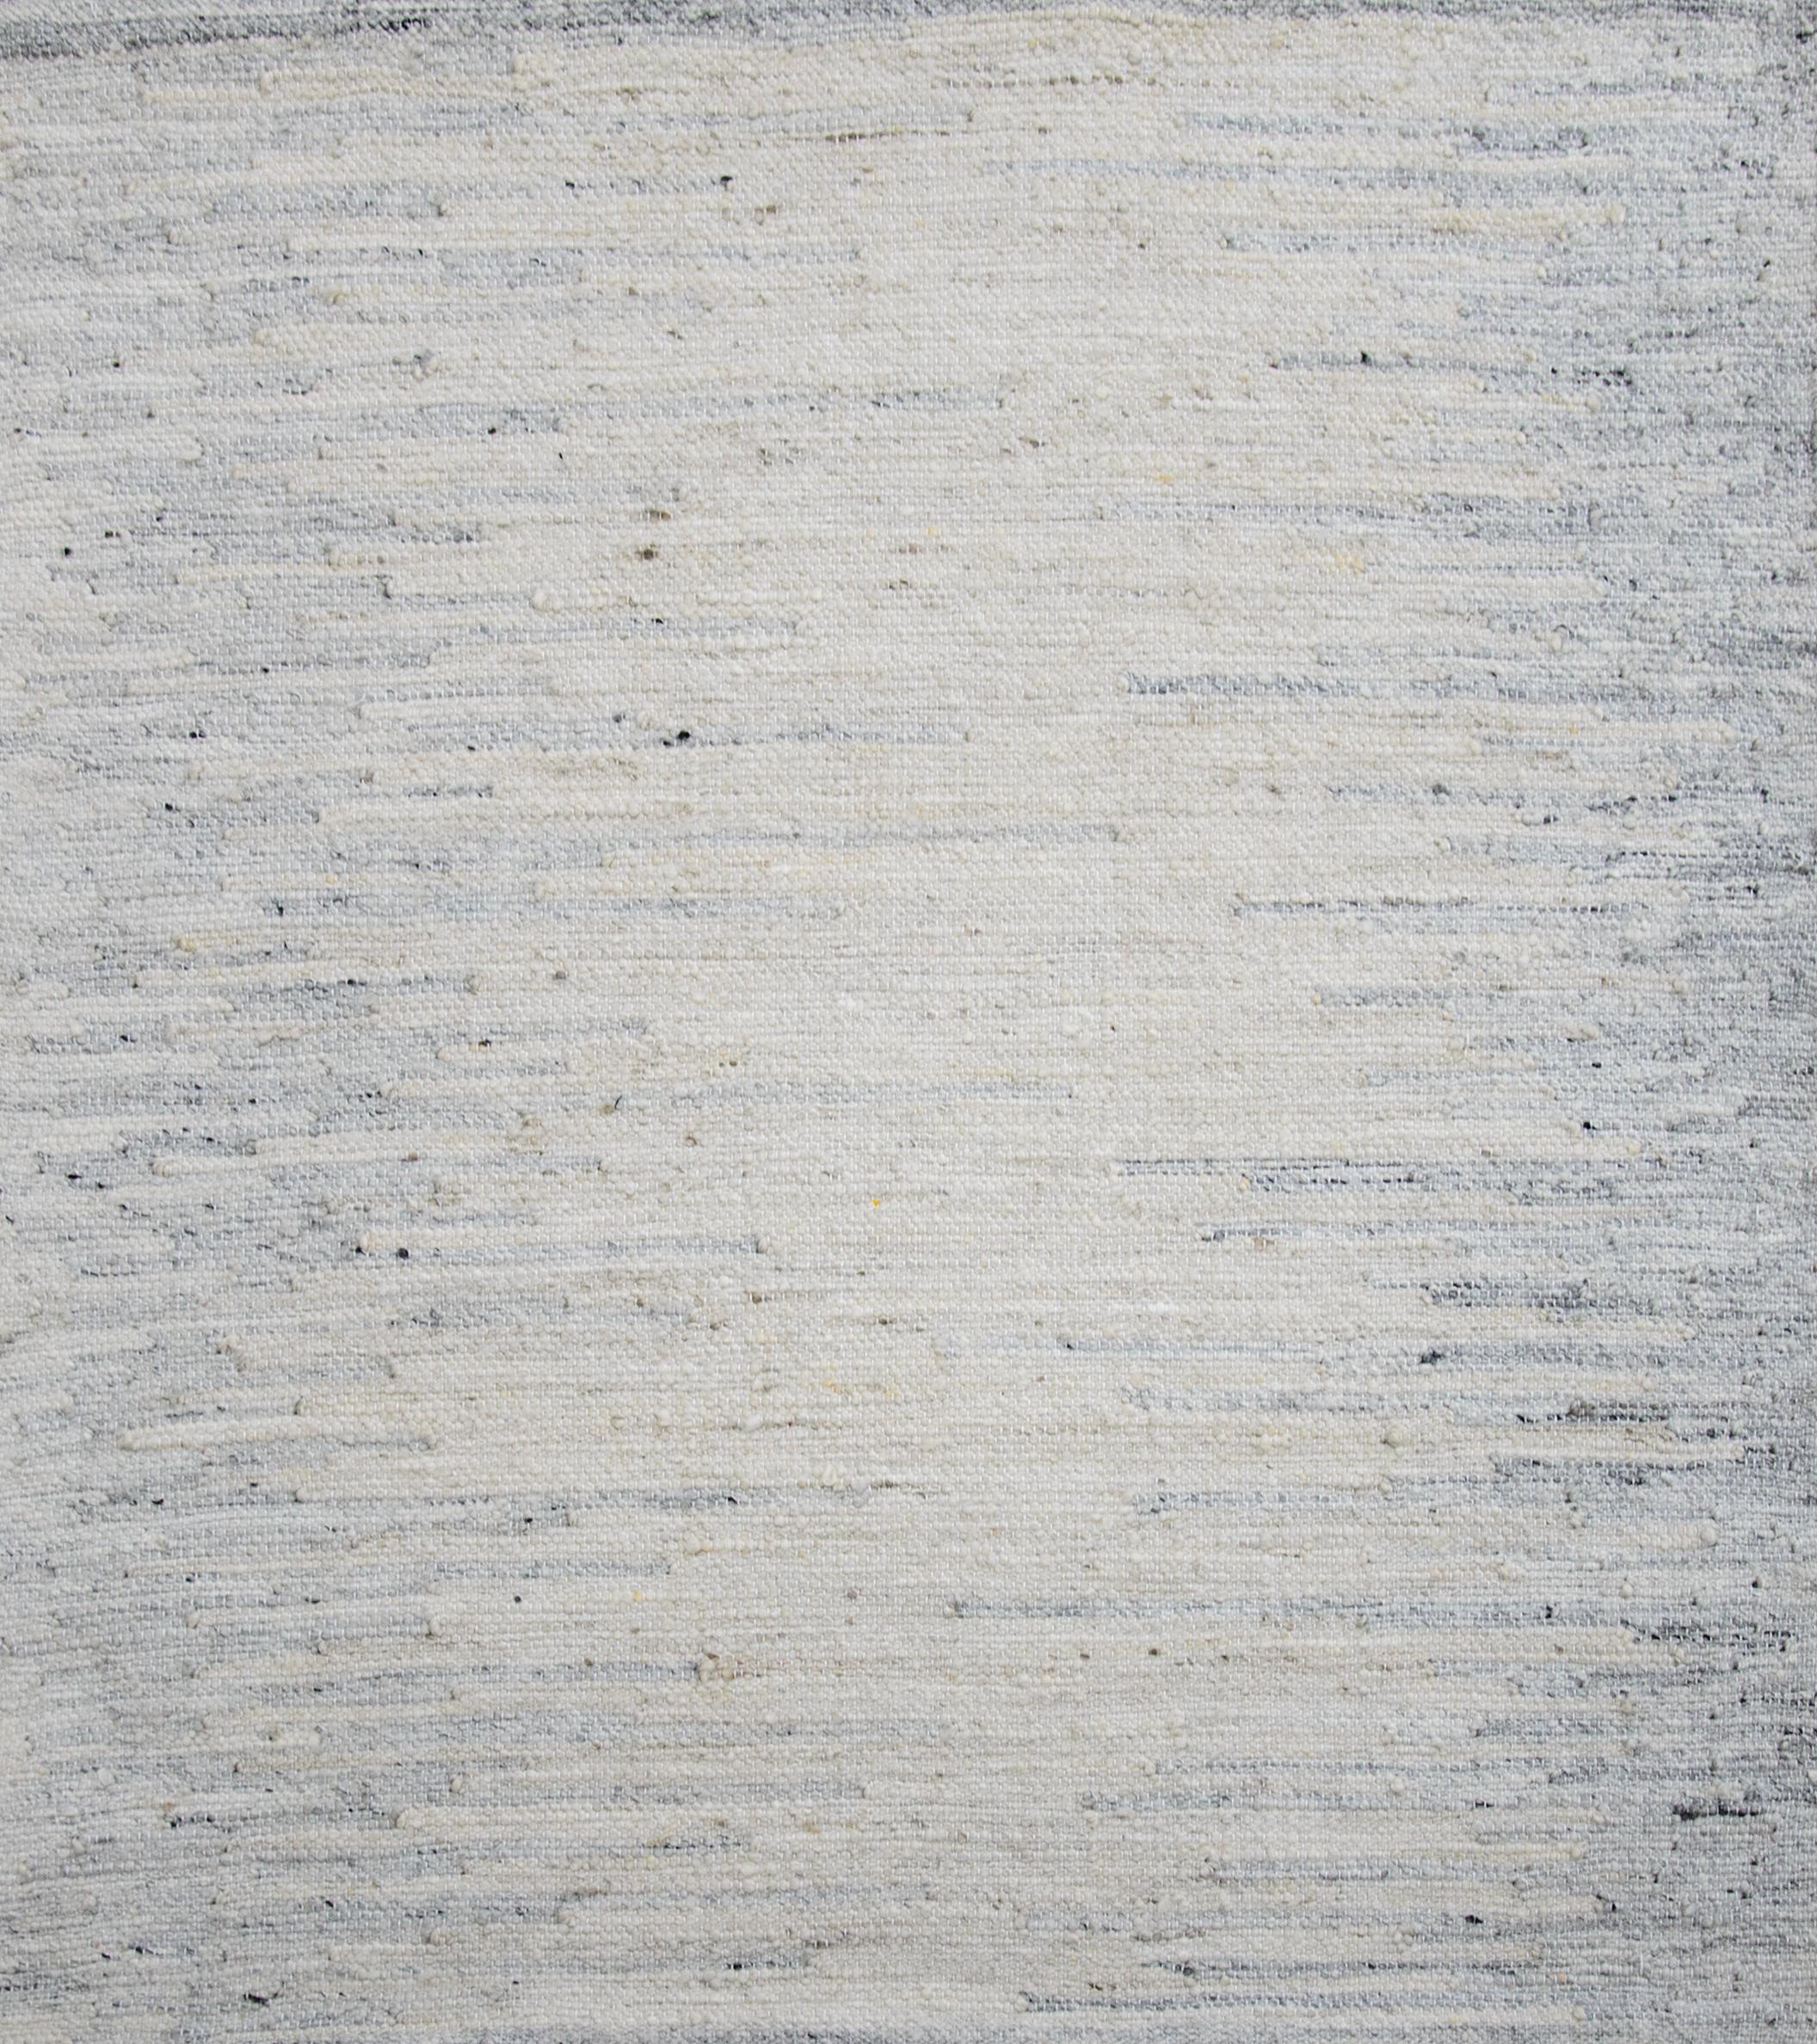 Moderner Flächenteppich im skandinavischen Design, handgewebt aus feiner Wolle und organischen Farbstoffen. Es zeichnet sich durch ein exquisites elfenbeinfarbenes Feld mit grauen 